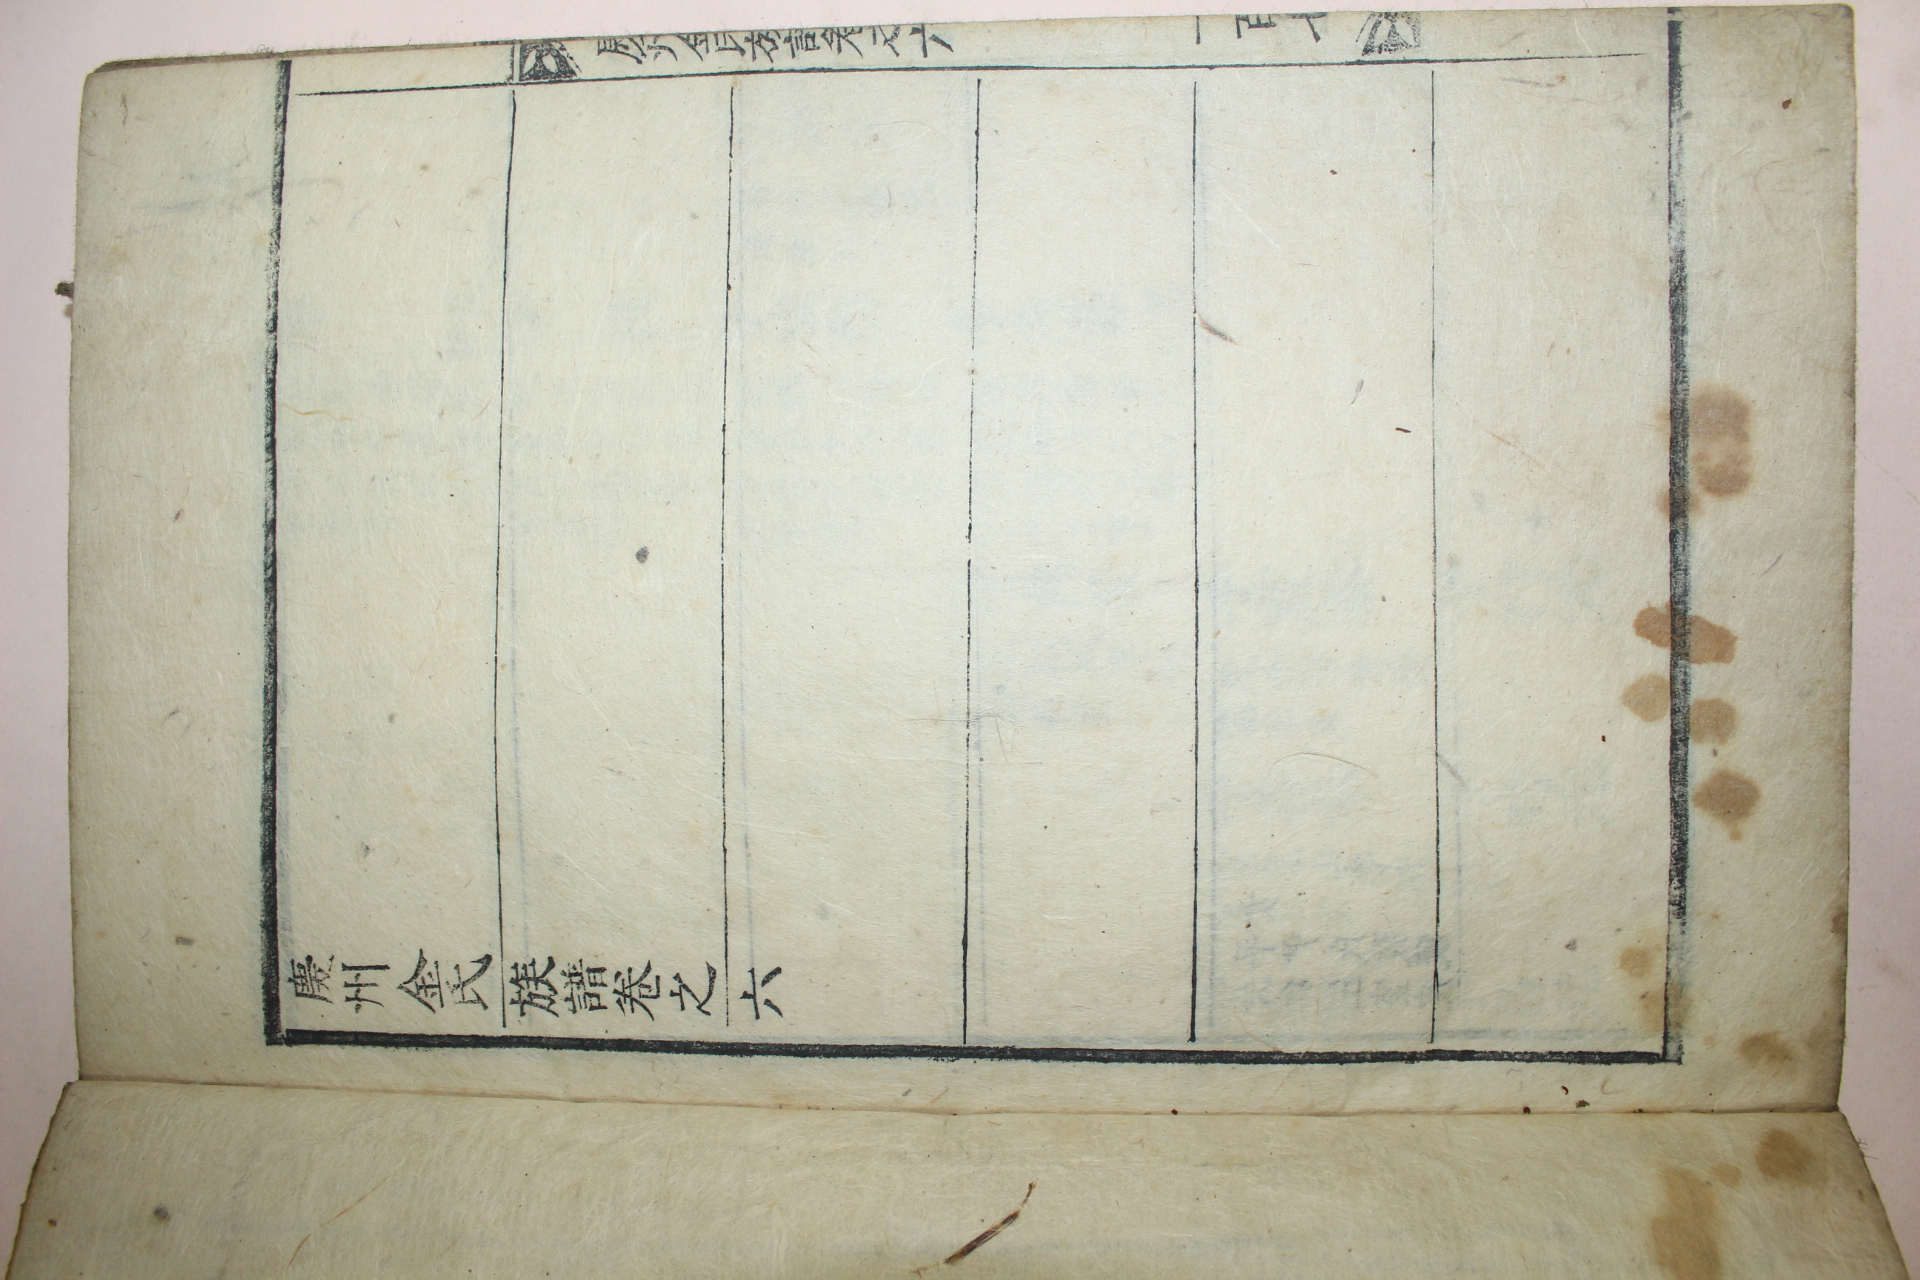 1745년 을축보 목활자본 경주김씨족보(慶州金氏族譜) 6책완질